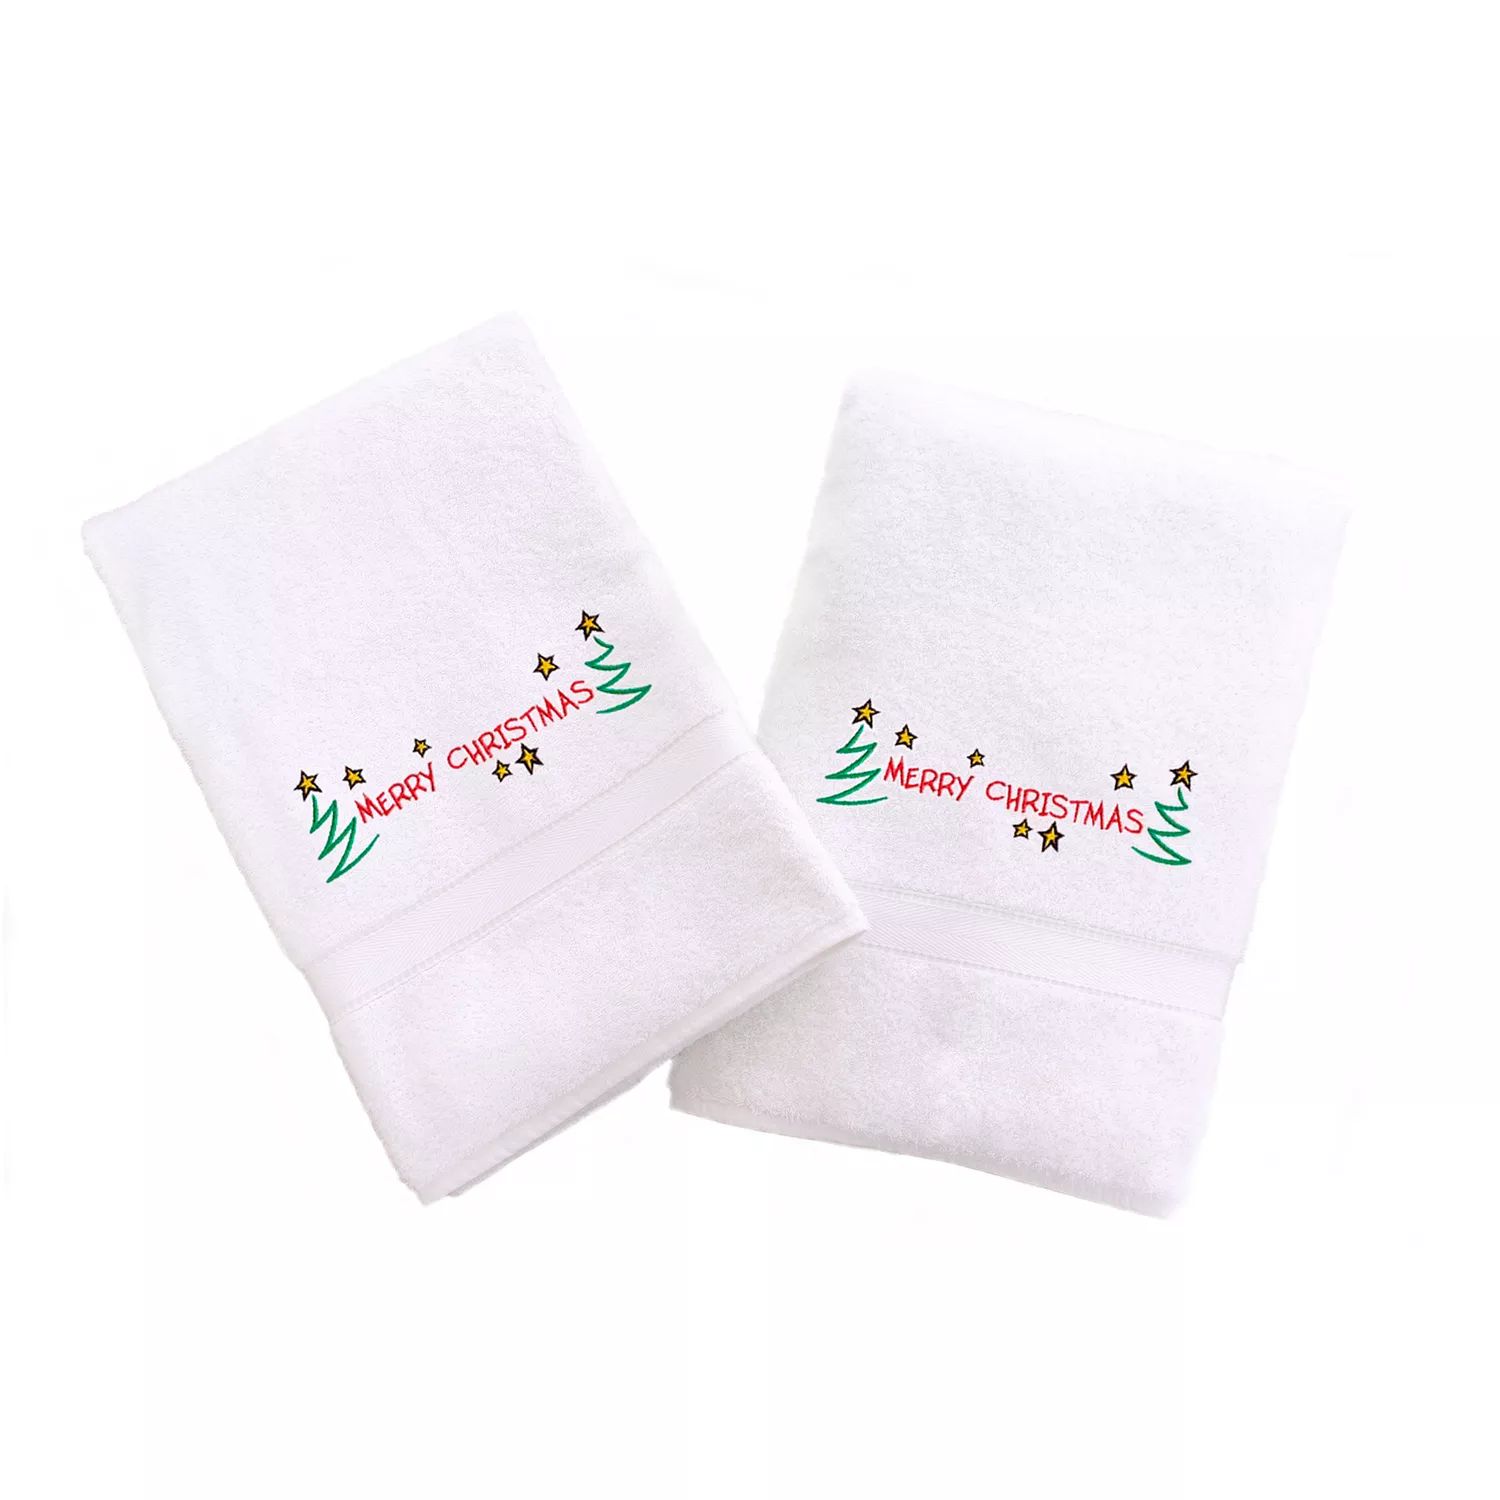 цена Linum Home Textiles Праздничные полотенца для рук с вышивкой бордюром, 2 упаковки